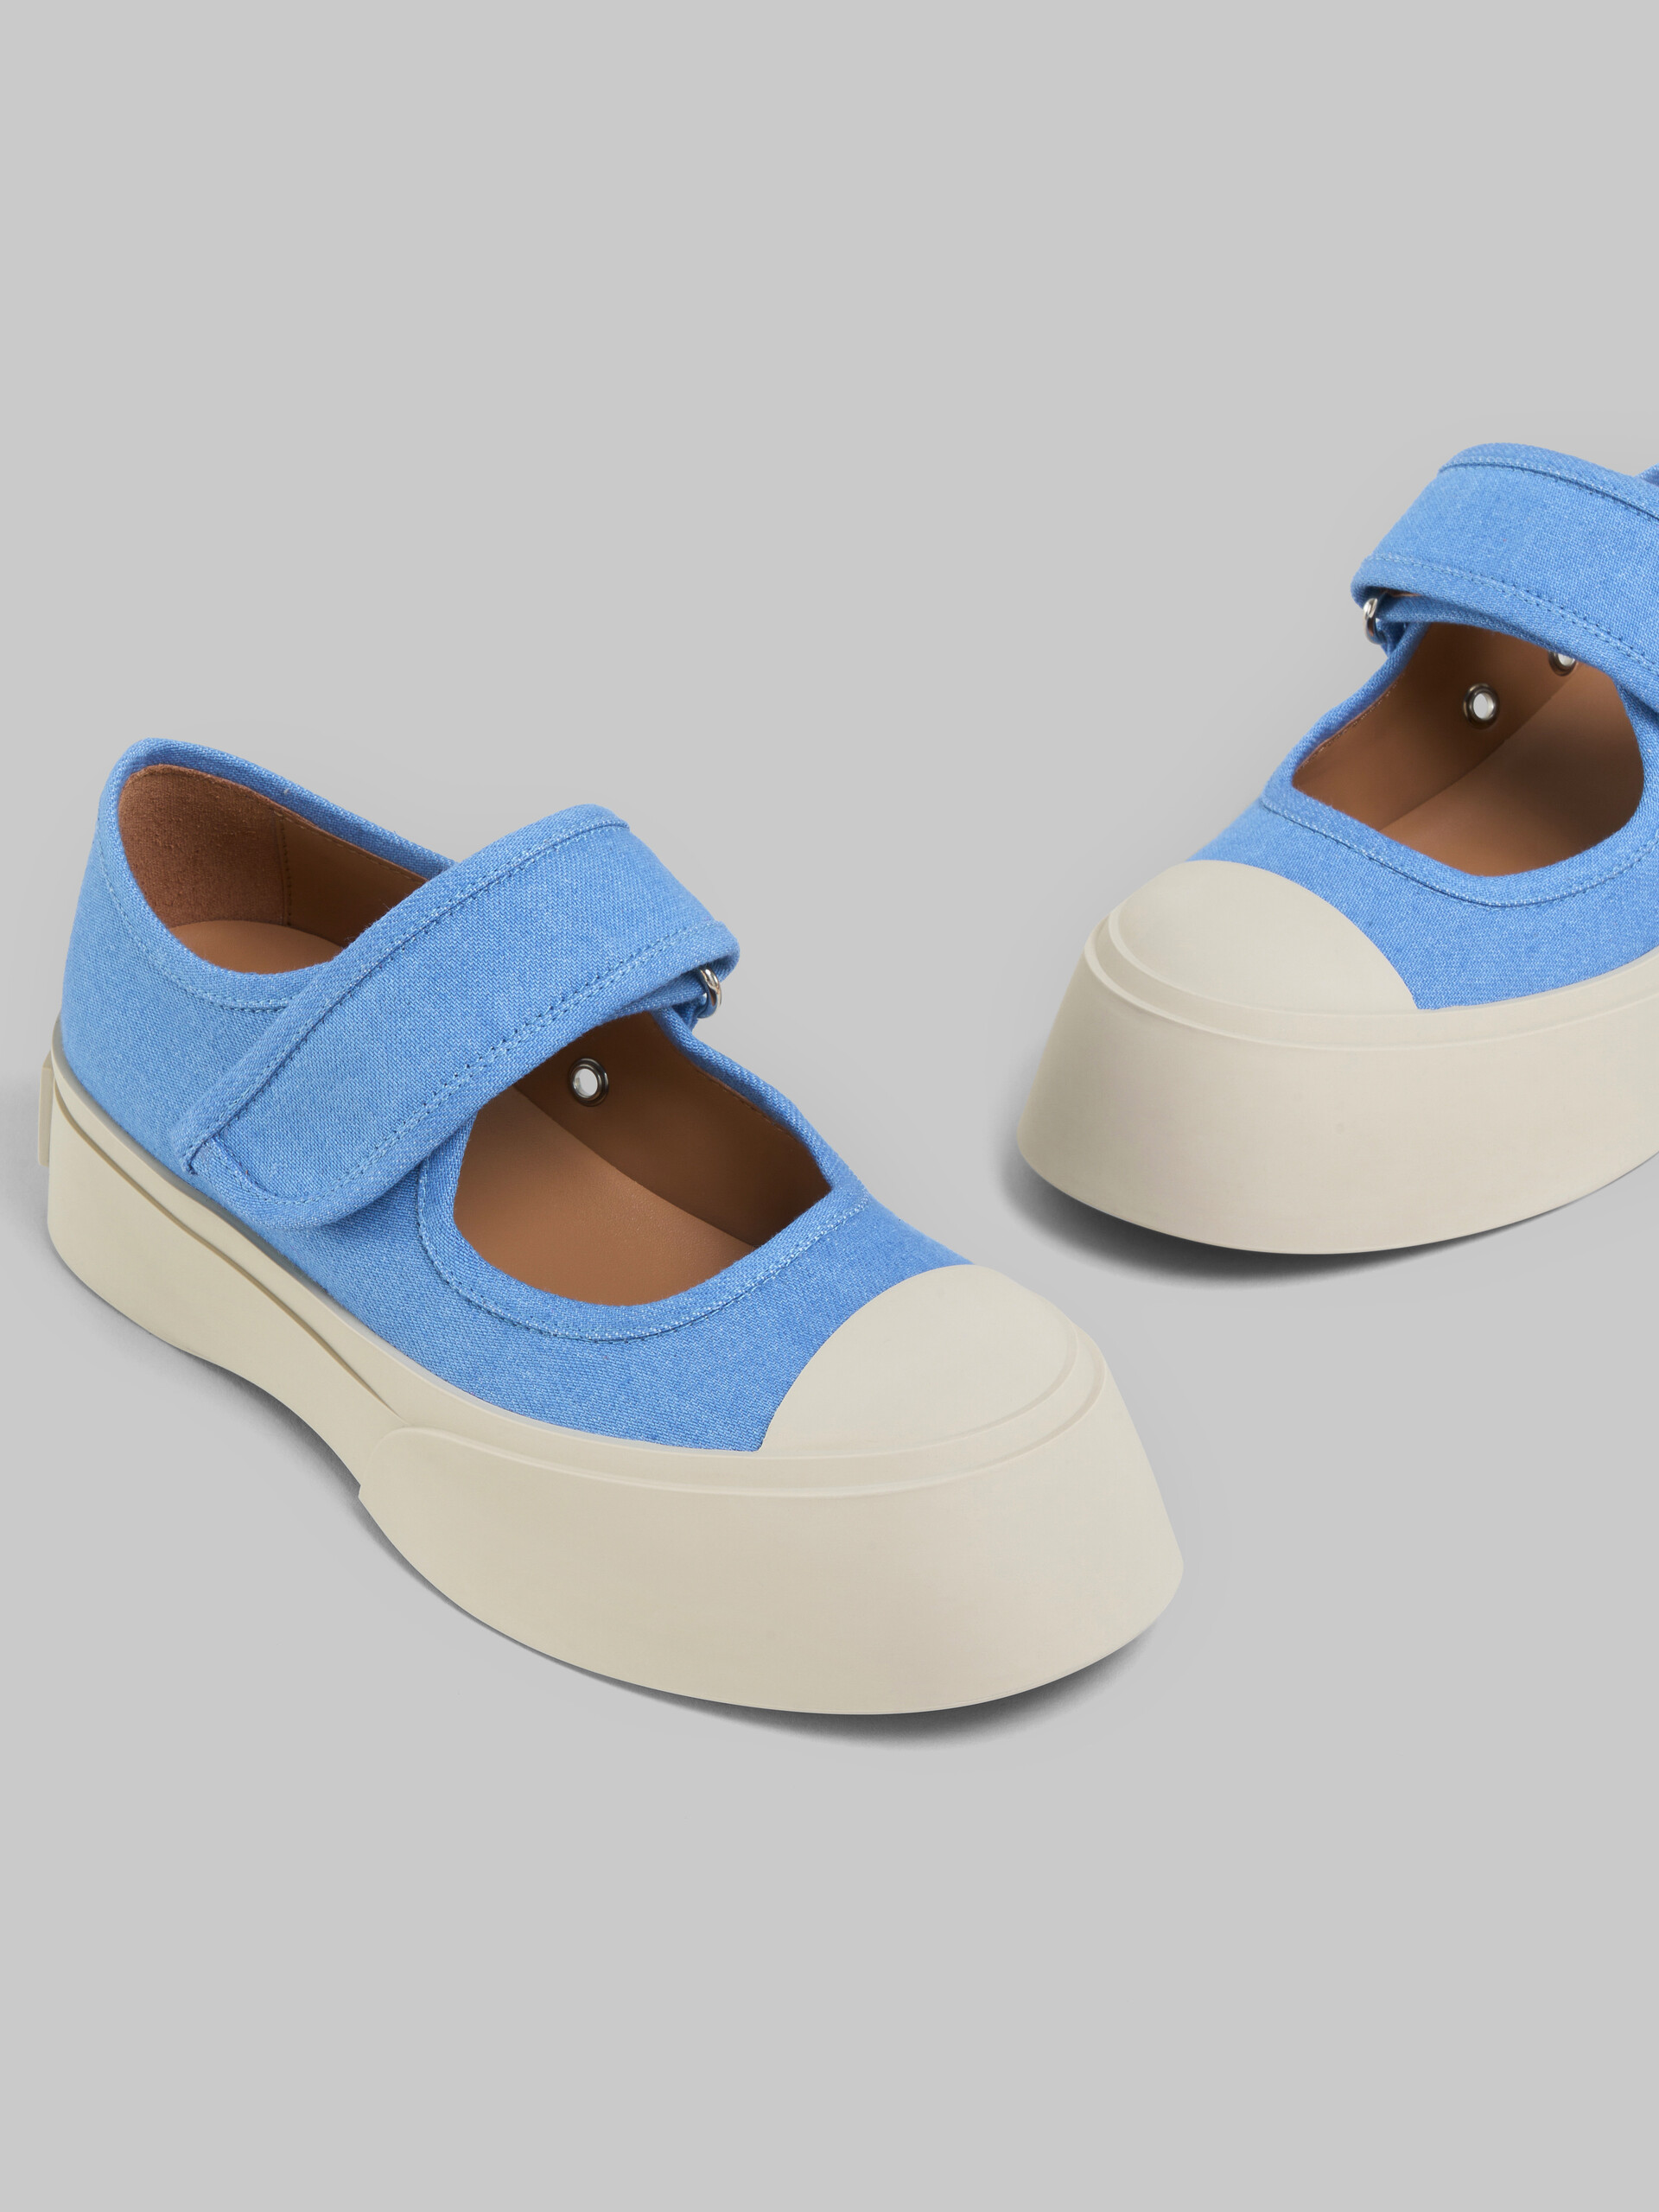 Zapatilla Mary Jane de denim azul claro - Sneakers - Image 5